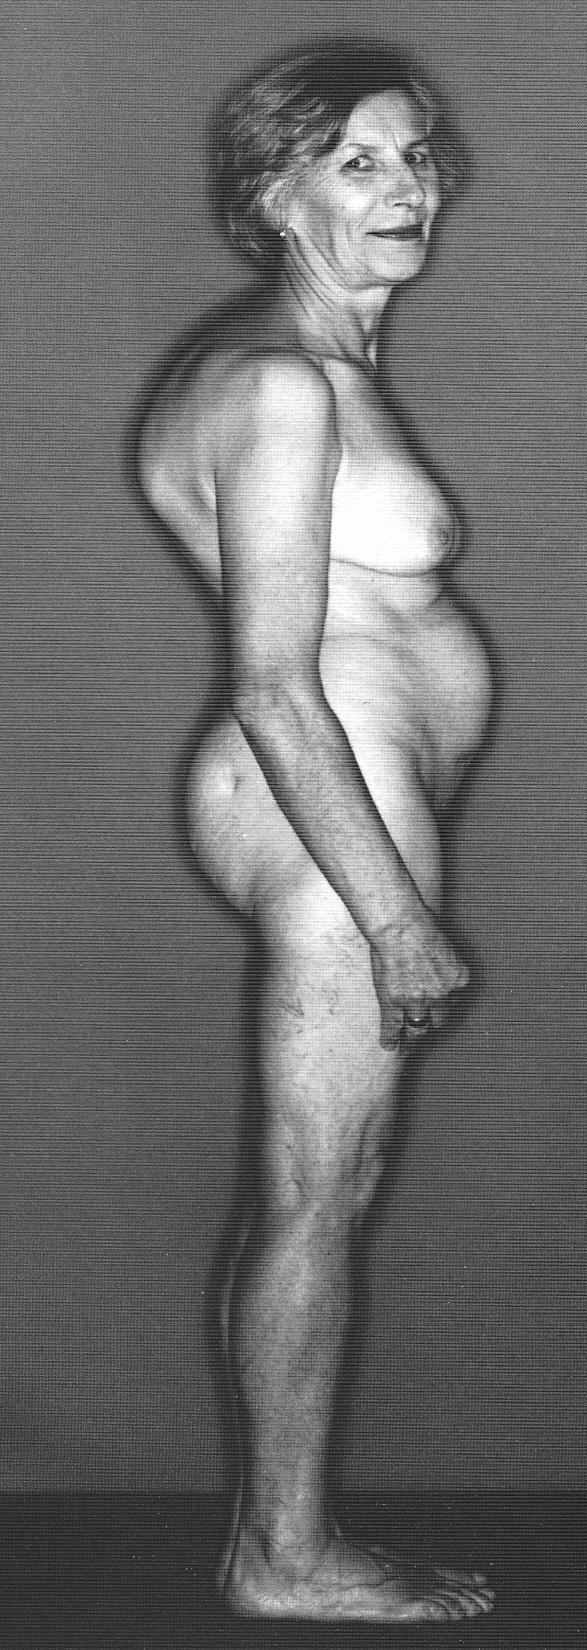 Osteoporoosin oireet OP 67-vuotiaalla liettualaisella naisella Dg 57-vuotiaana, pituus lyhentynyt 7 cm Oireettomuus